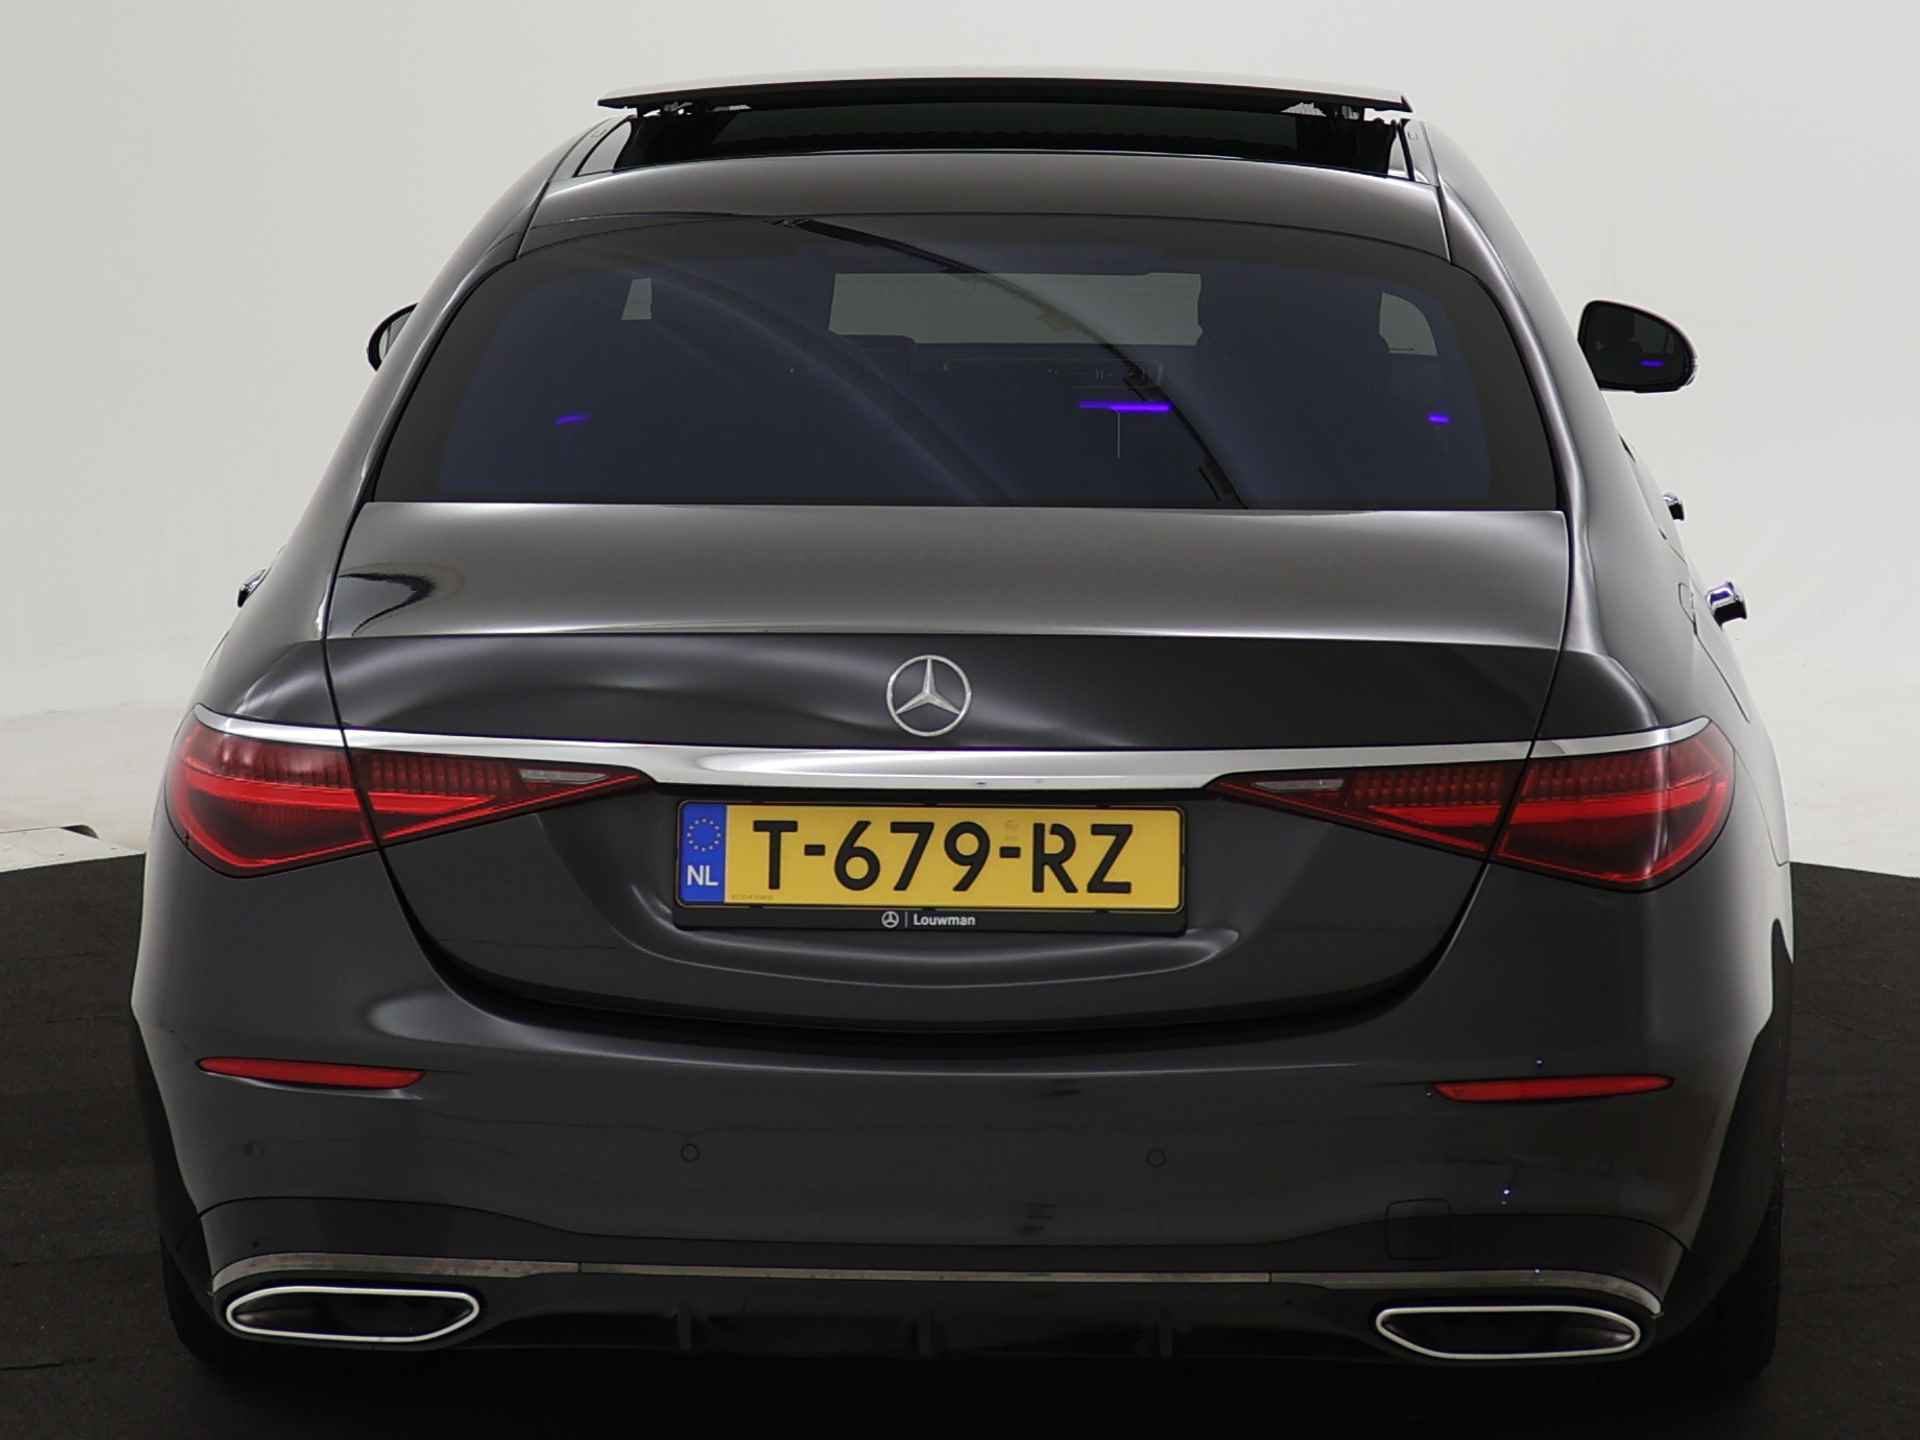 Mercedes-Benz S-Klasse 450 e Lang AMG Line Multi spaaks lichtmetalen velgen| Premium plus pakket | Night Pakket | Achteras meesturend 4,5 graad | Alarm klasse 5 | inclusief 24 maanden MB Certified garantie voor europa - 25/37